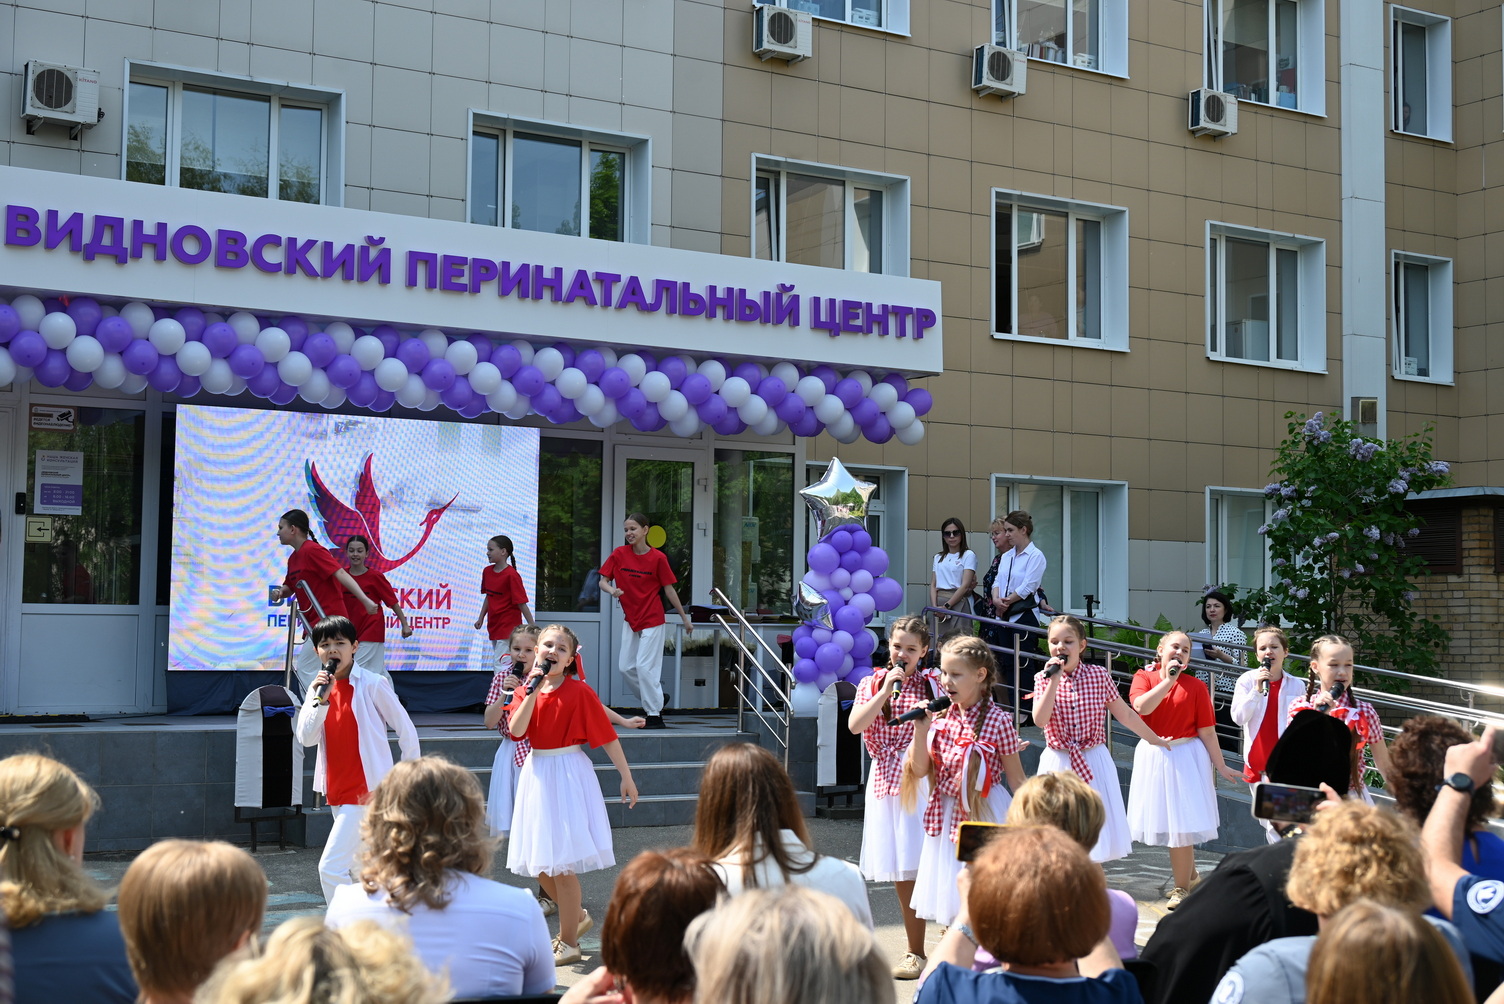 Видновский перинатальный центр отметил юбилей в День защиты детей